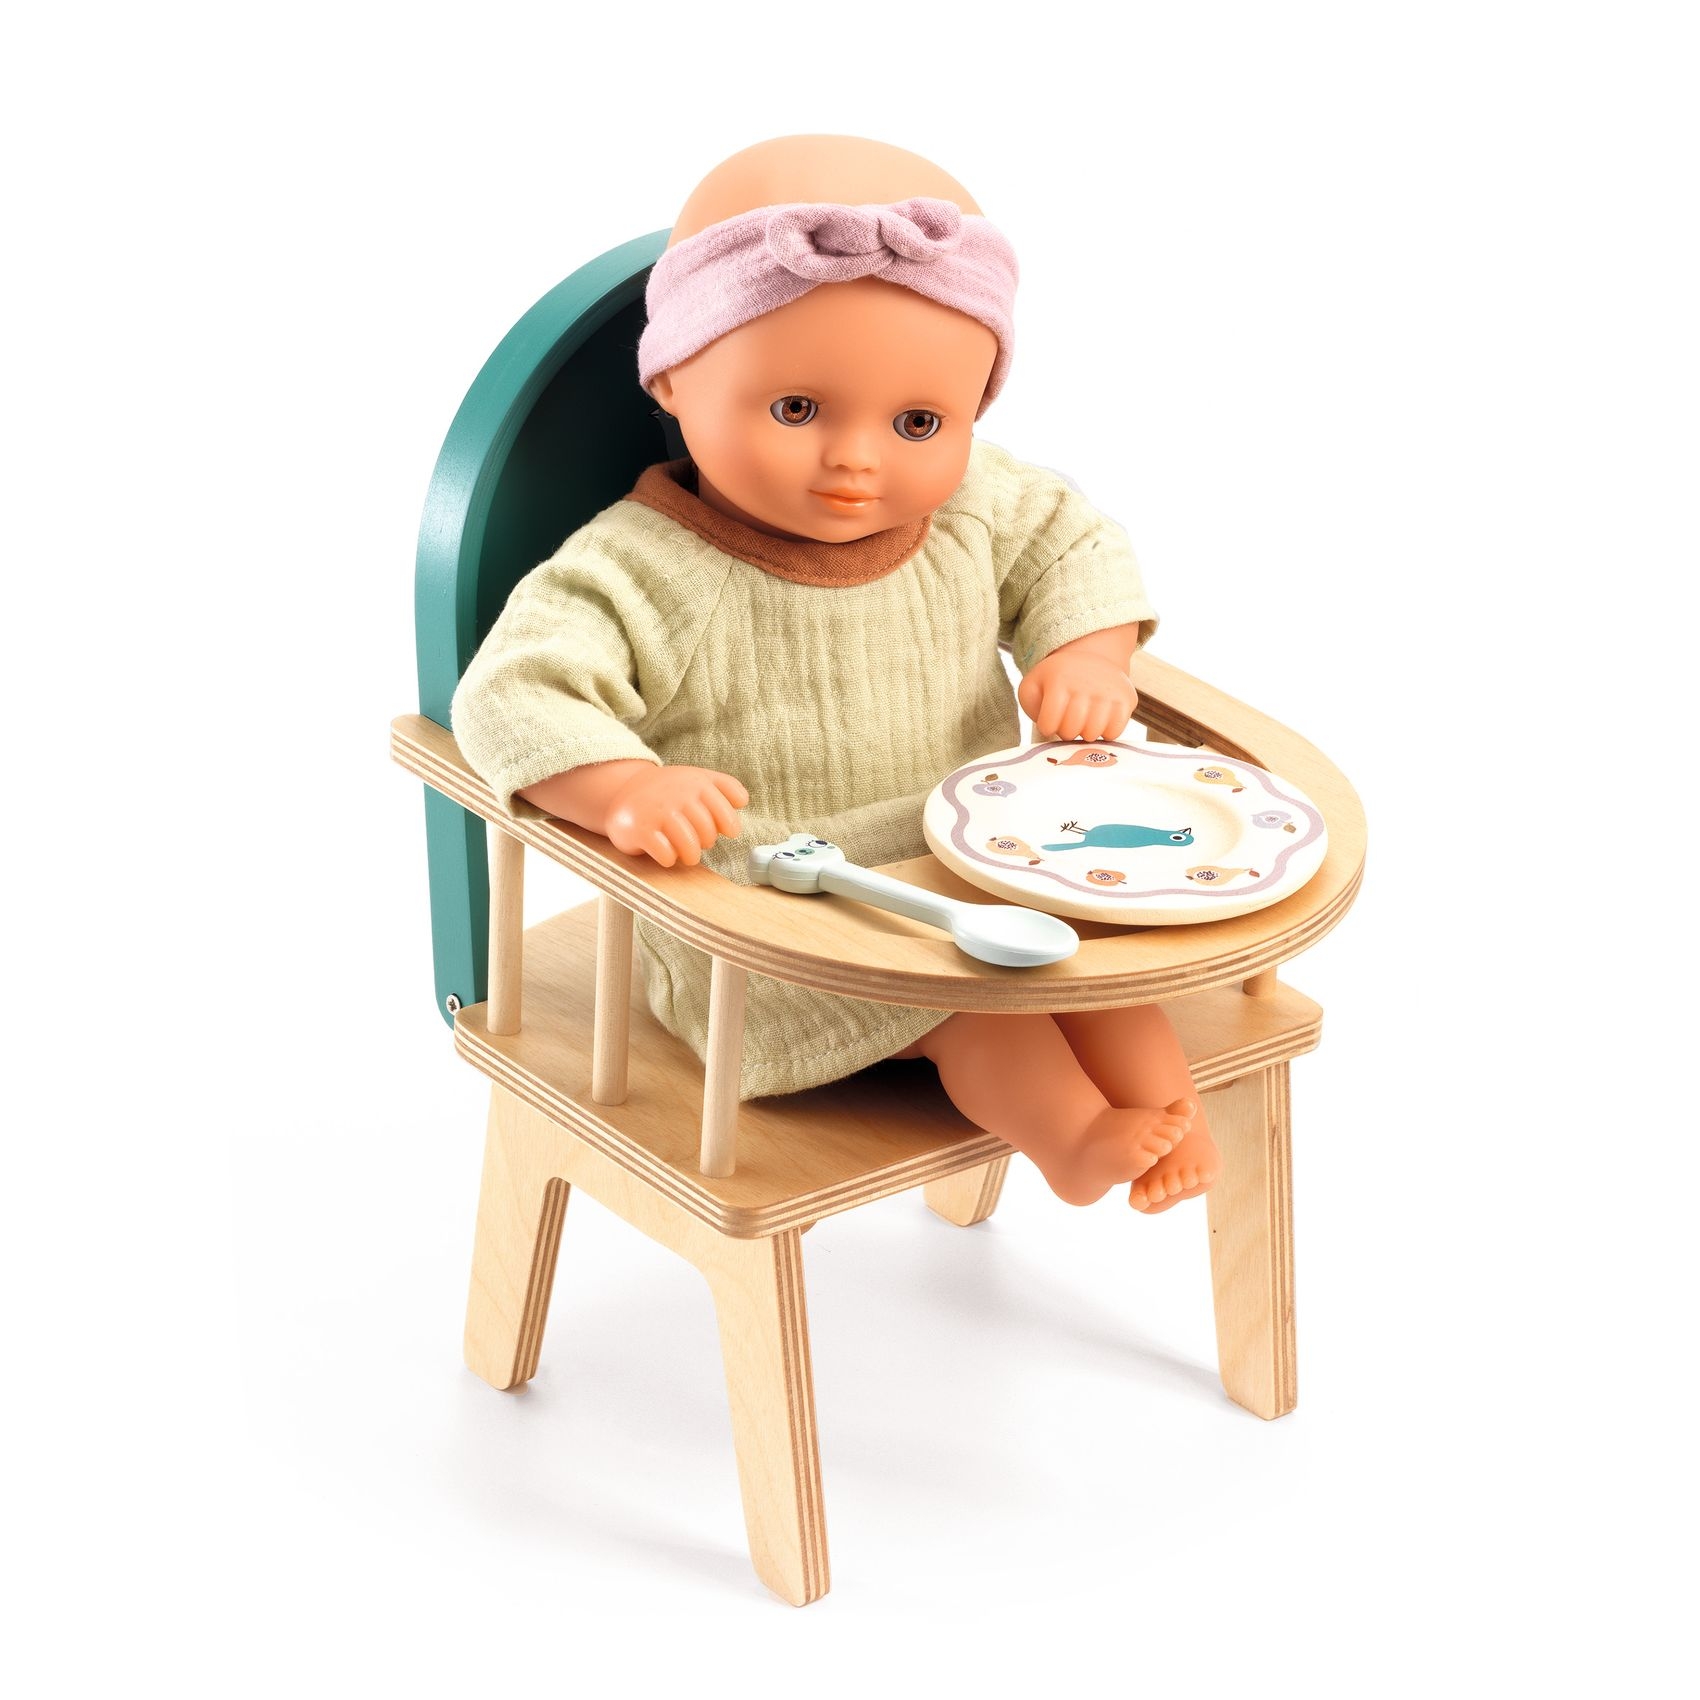 Babaetetés - Etetőszék játékbabáknak - Baby chair - 1